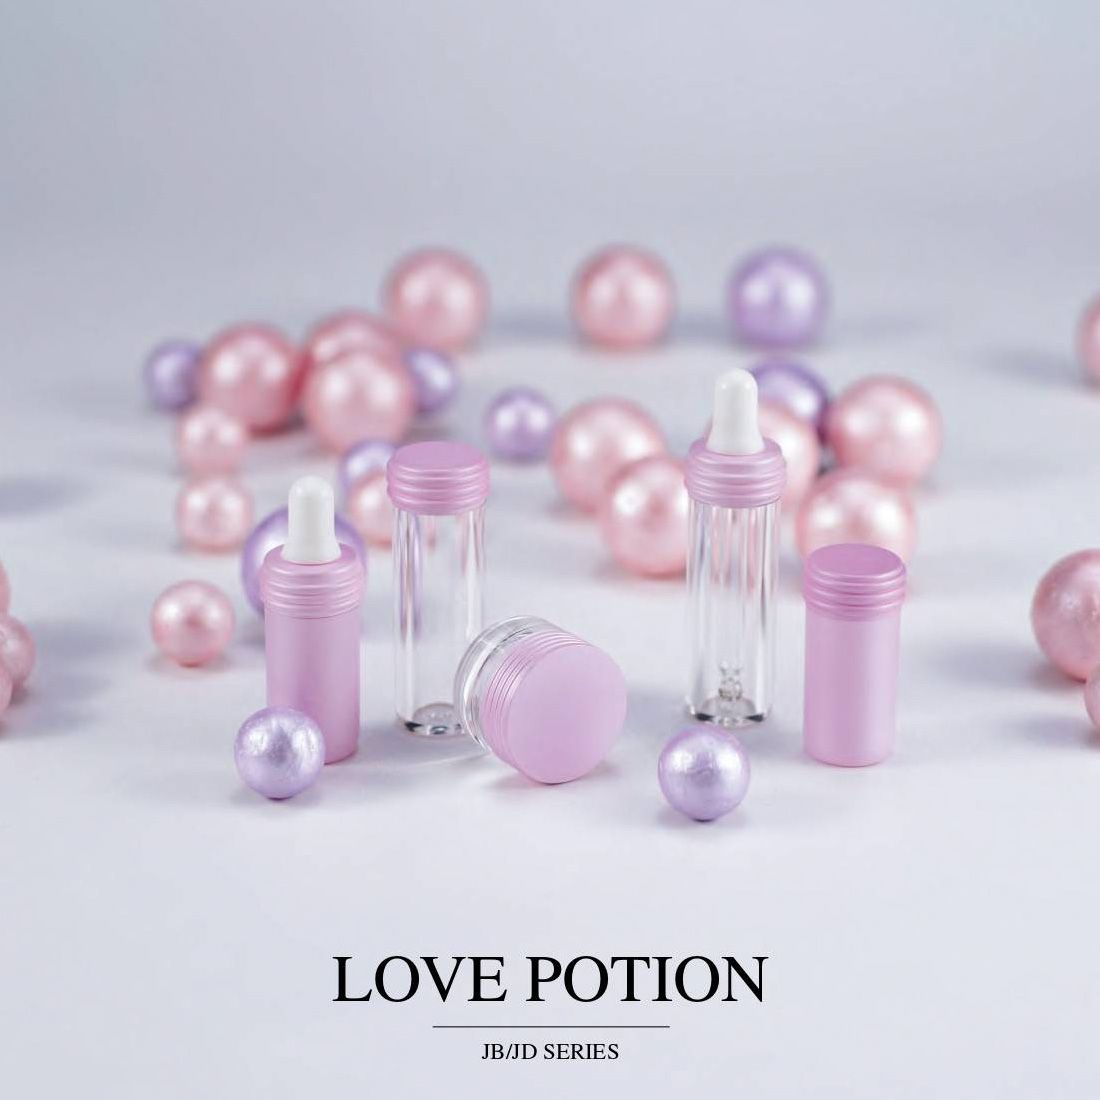 COSJAR cometic container design - Love potion series